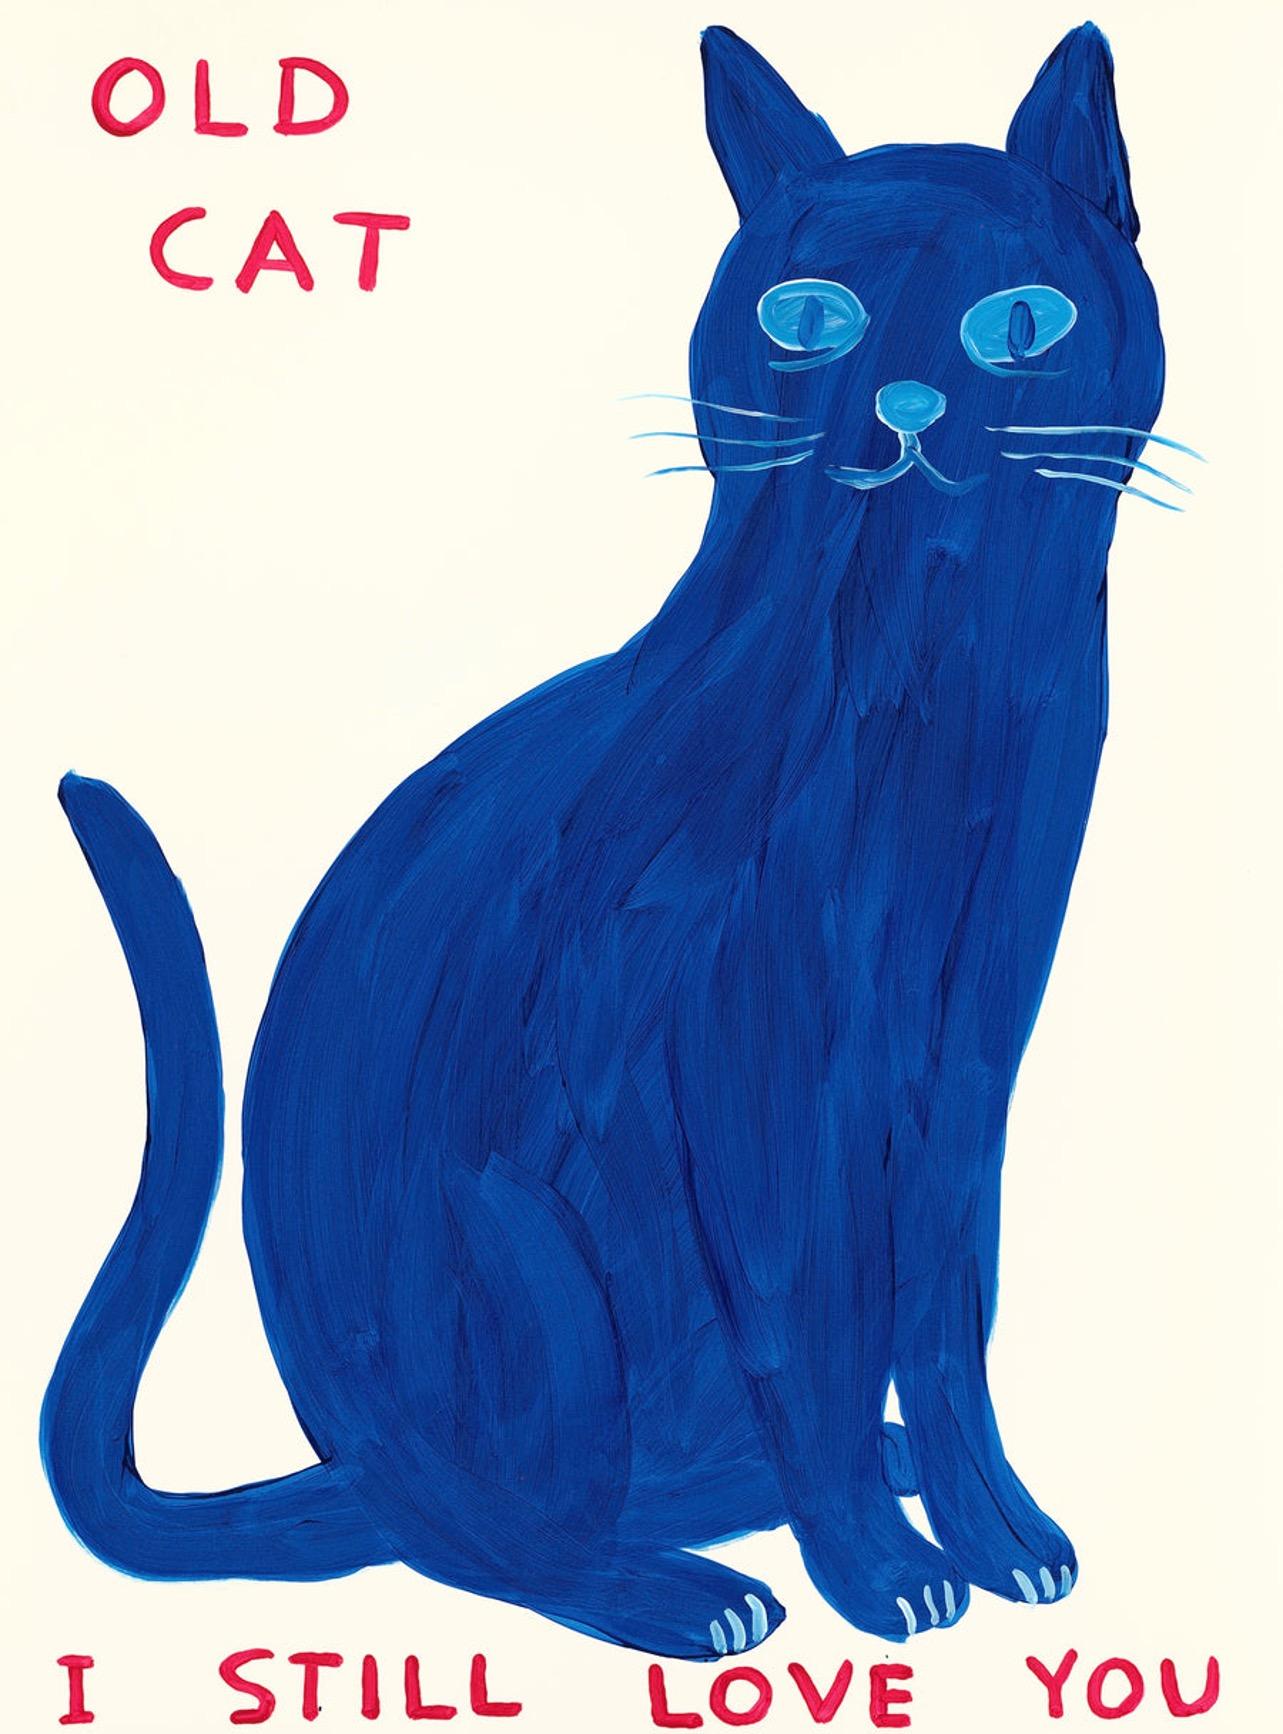 David Shrigley
Vieux chat (je t'aime toujours), 2022
Sérigraphie 12 couleurs avec vernis de recouvrement sur papier Somerset Tub 410gsm
Edition de 125
Taille de l'impression : 76cm x 56cm
